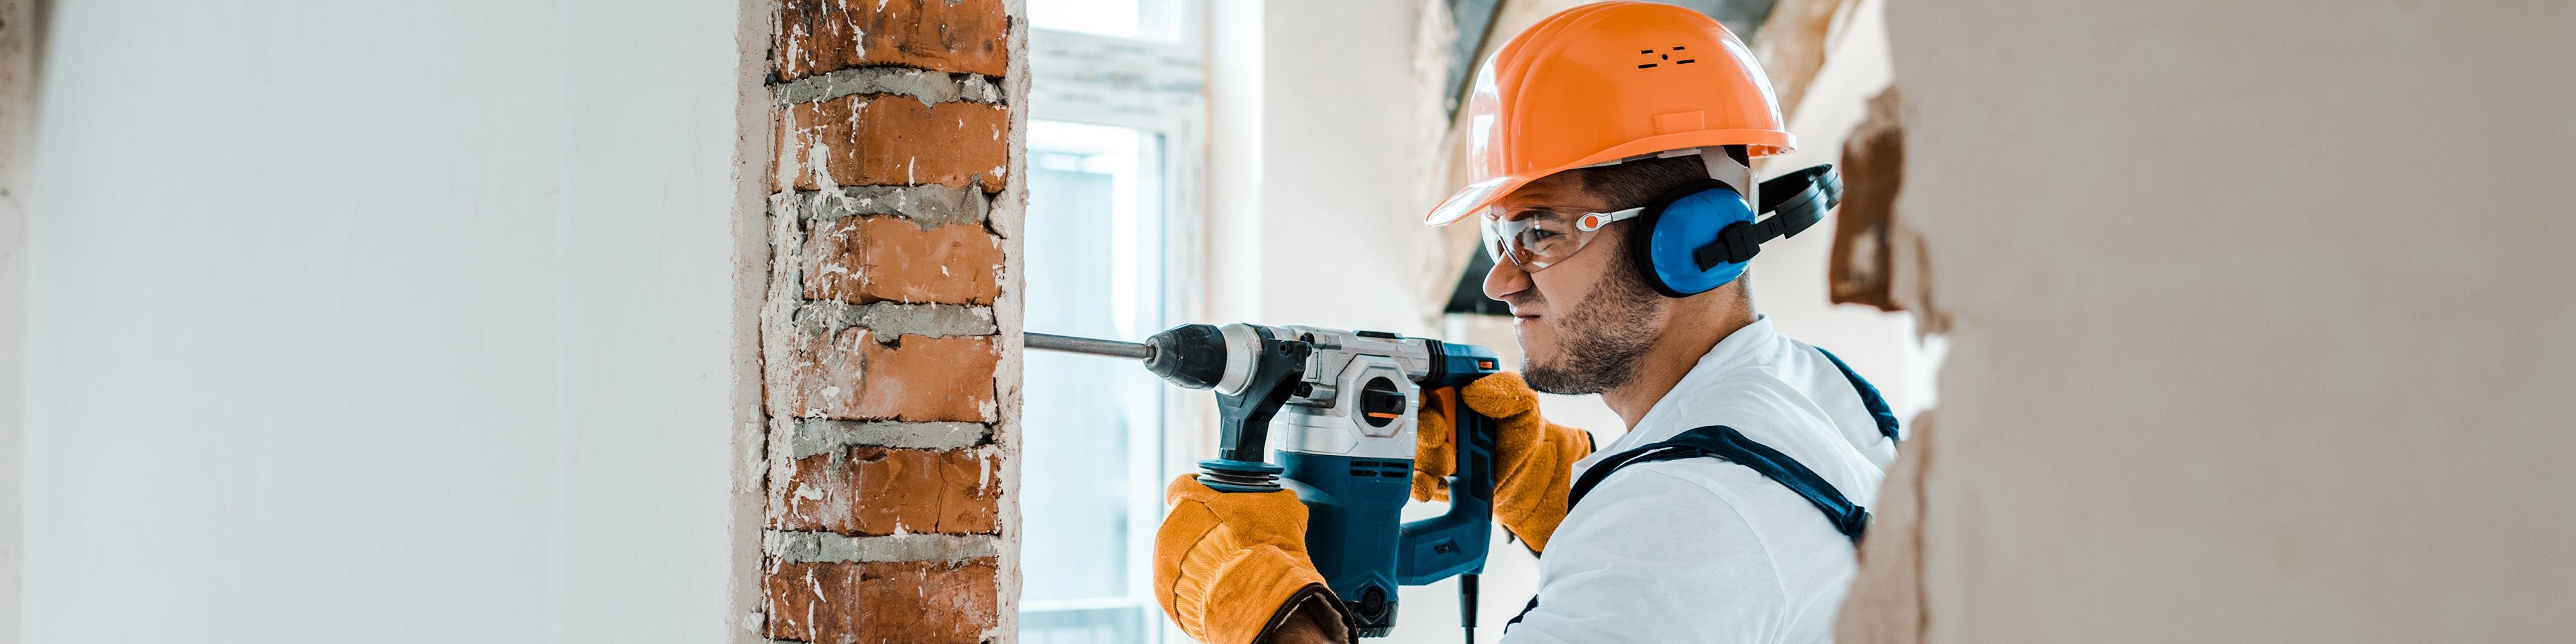 Handyman vs. Contractor License Requirements